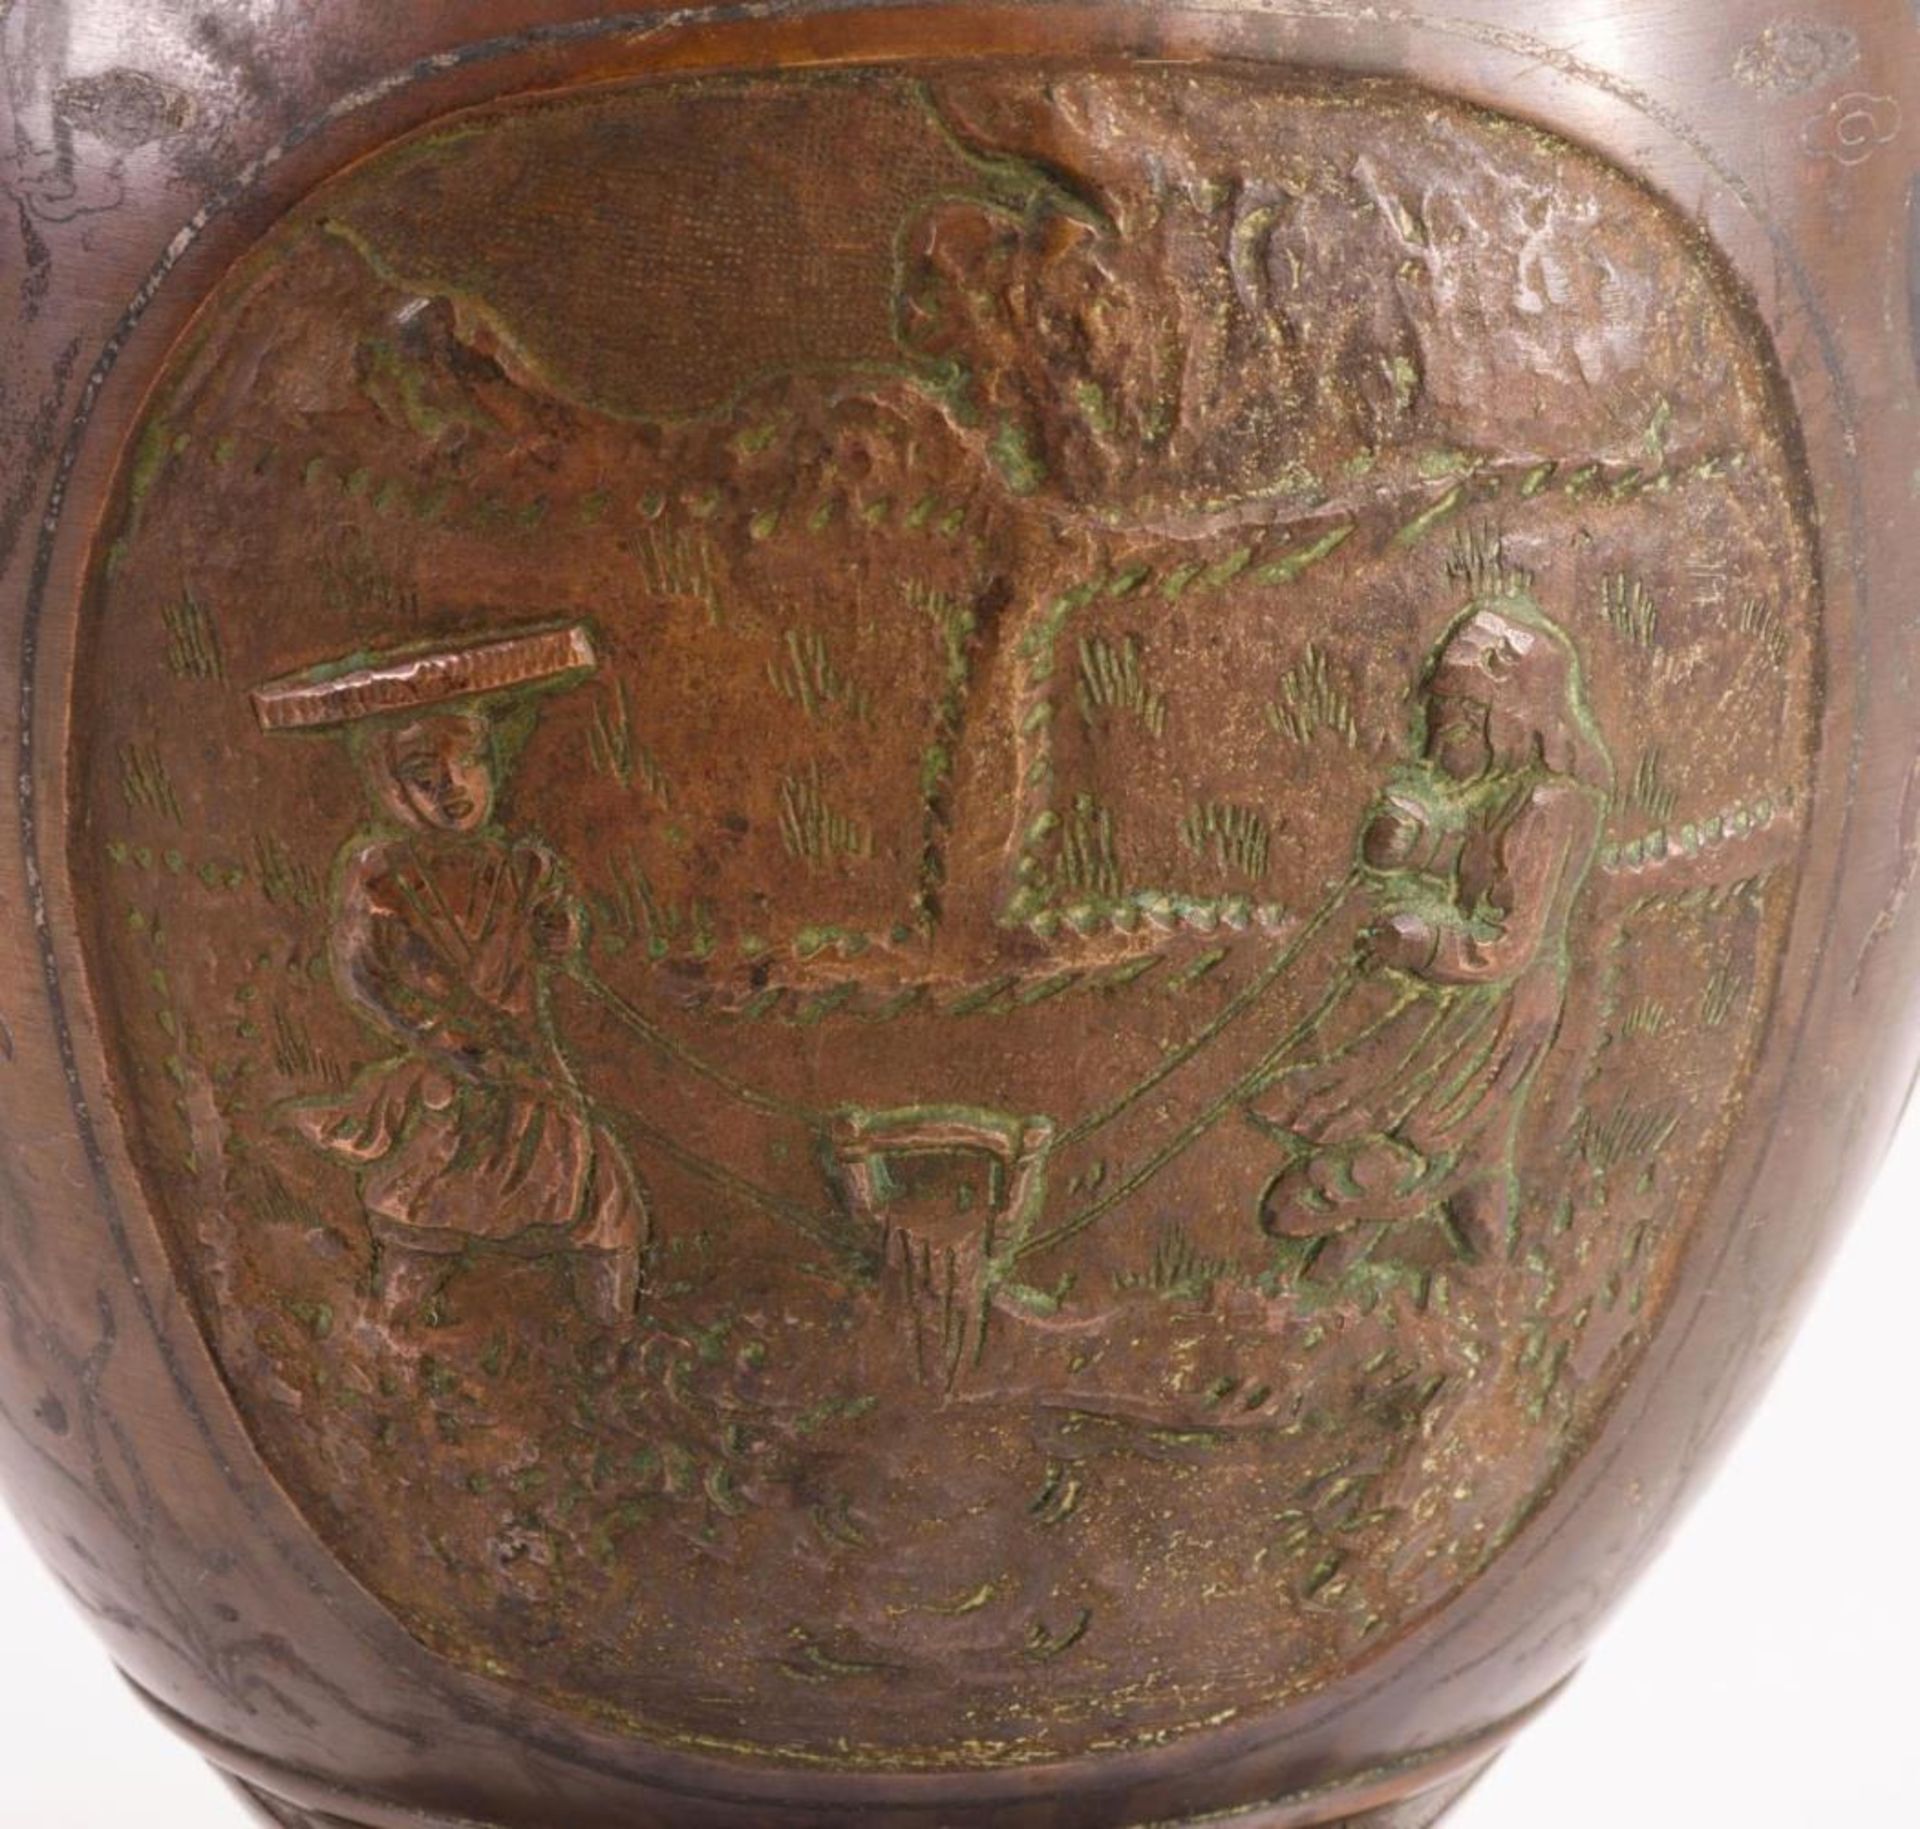 Bronzevase mit Reisanbau-Motiven - Bild 2 aus 4